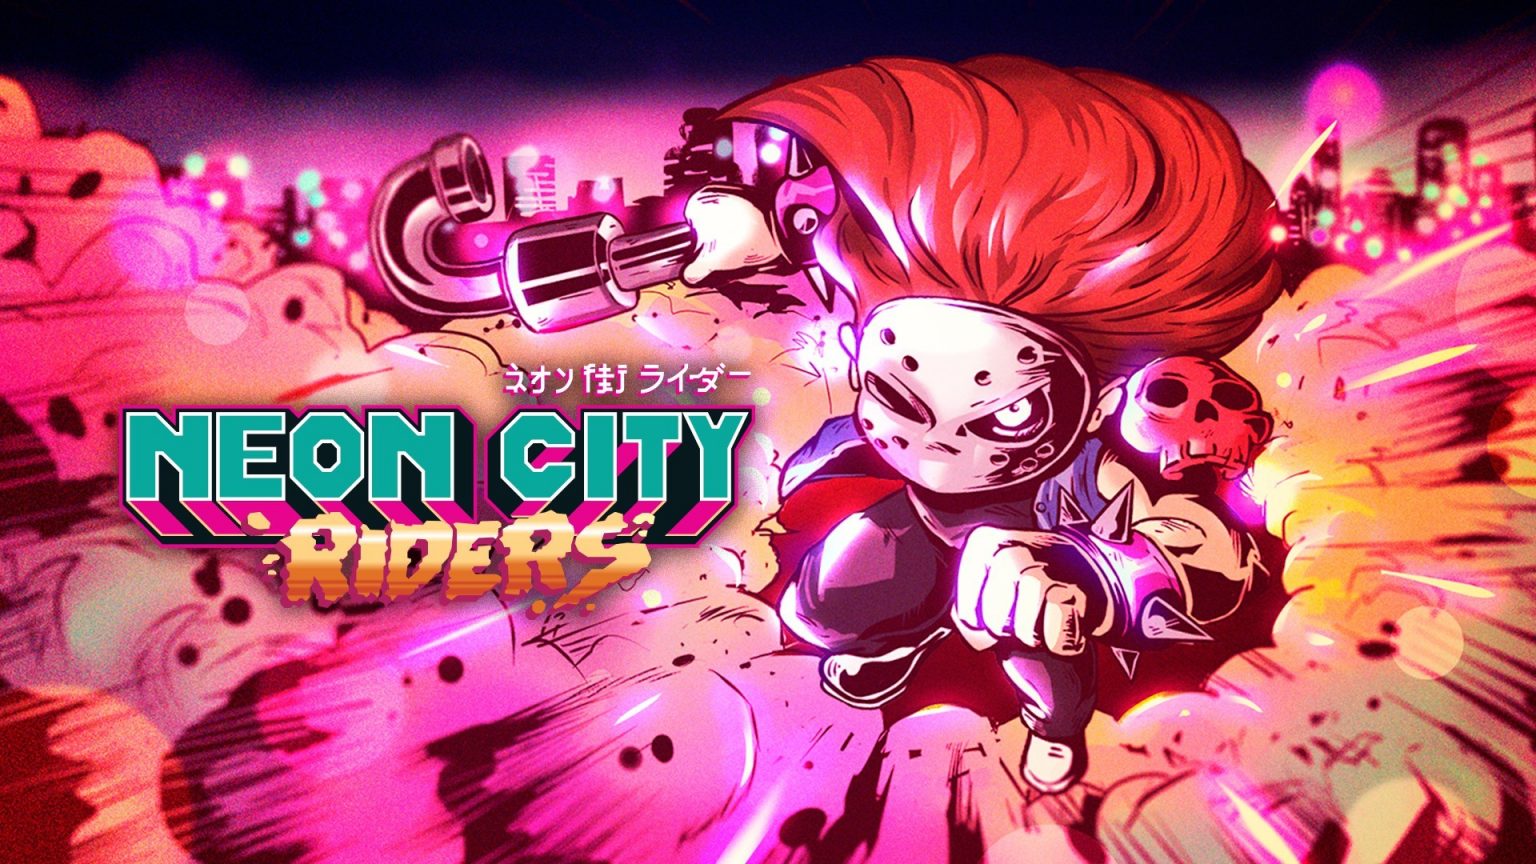 Neon-City-Riders-1536x864.jpg